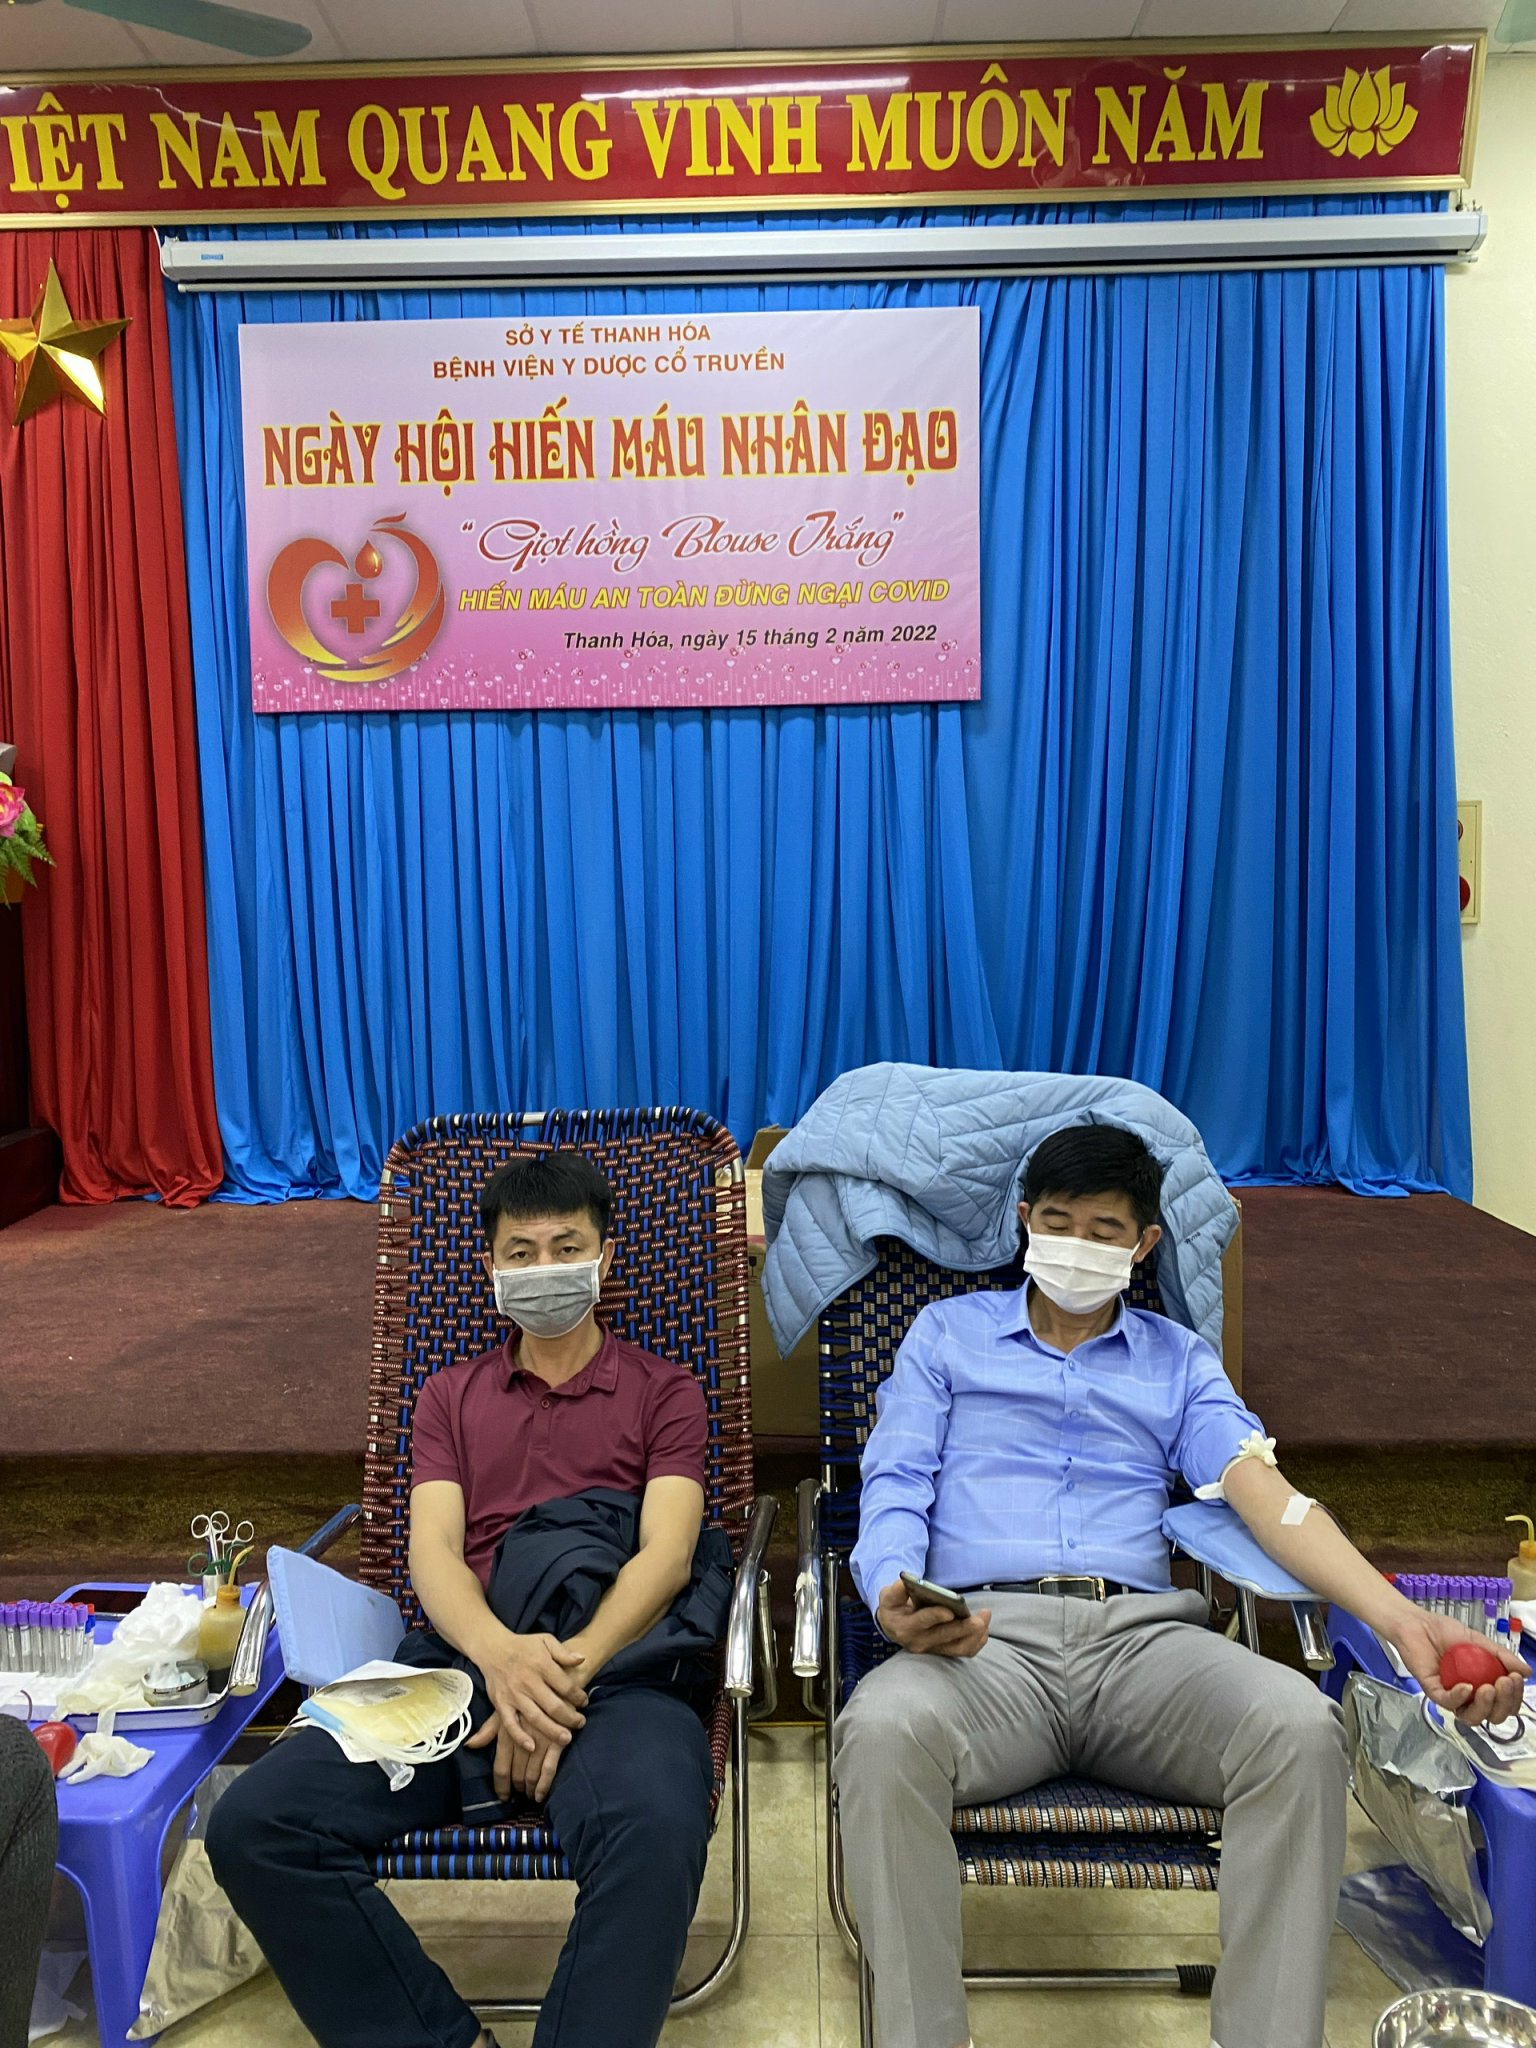 Ngày hội hiến máu nhân đạo Bệnh viện Y dược cổ truyền tỉnh Thanh Hoá